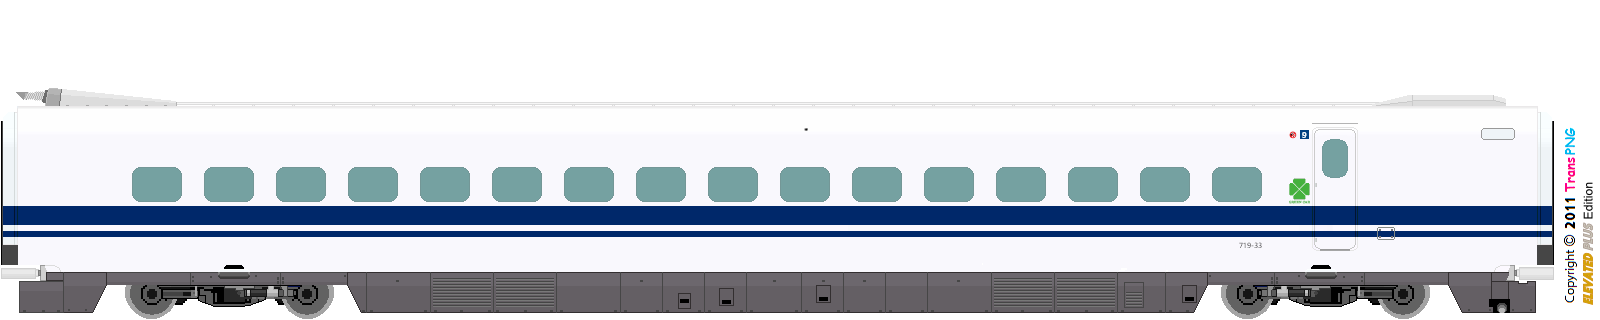 [9010] Central Japan Railway 52286607407_0b8d406d91_o